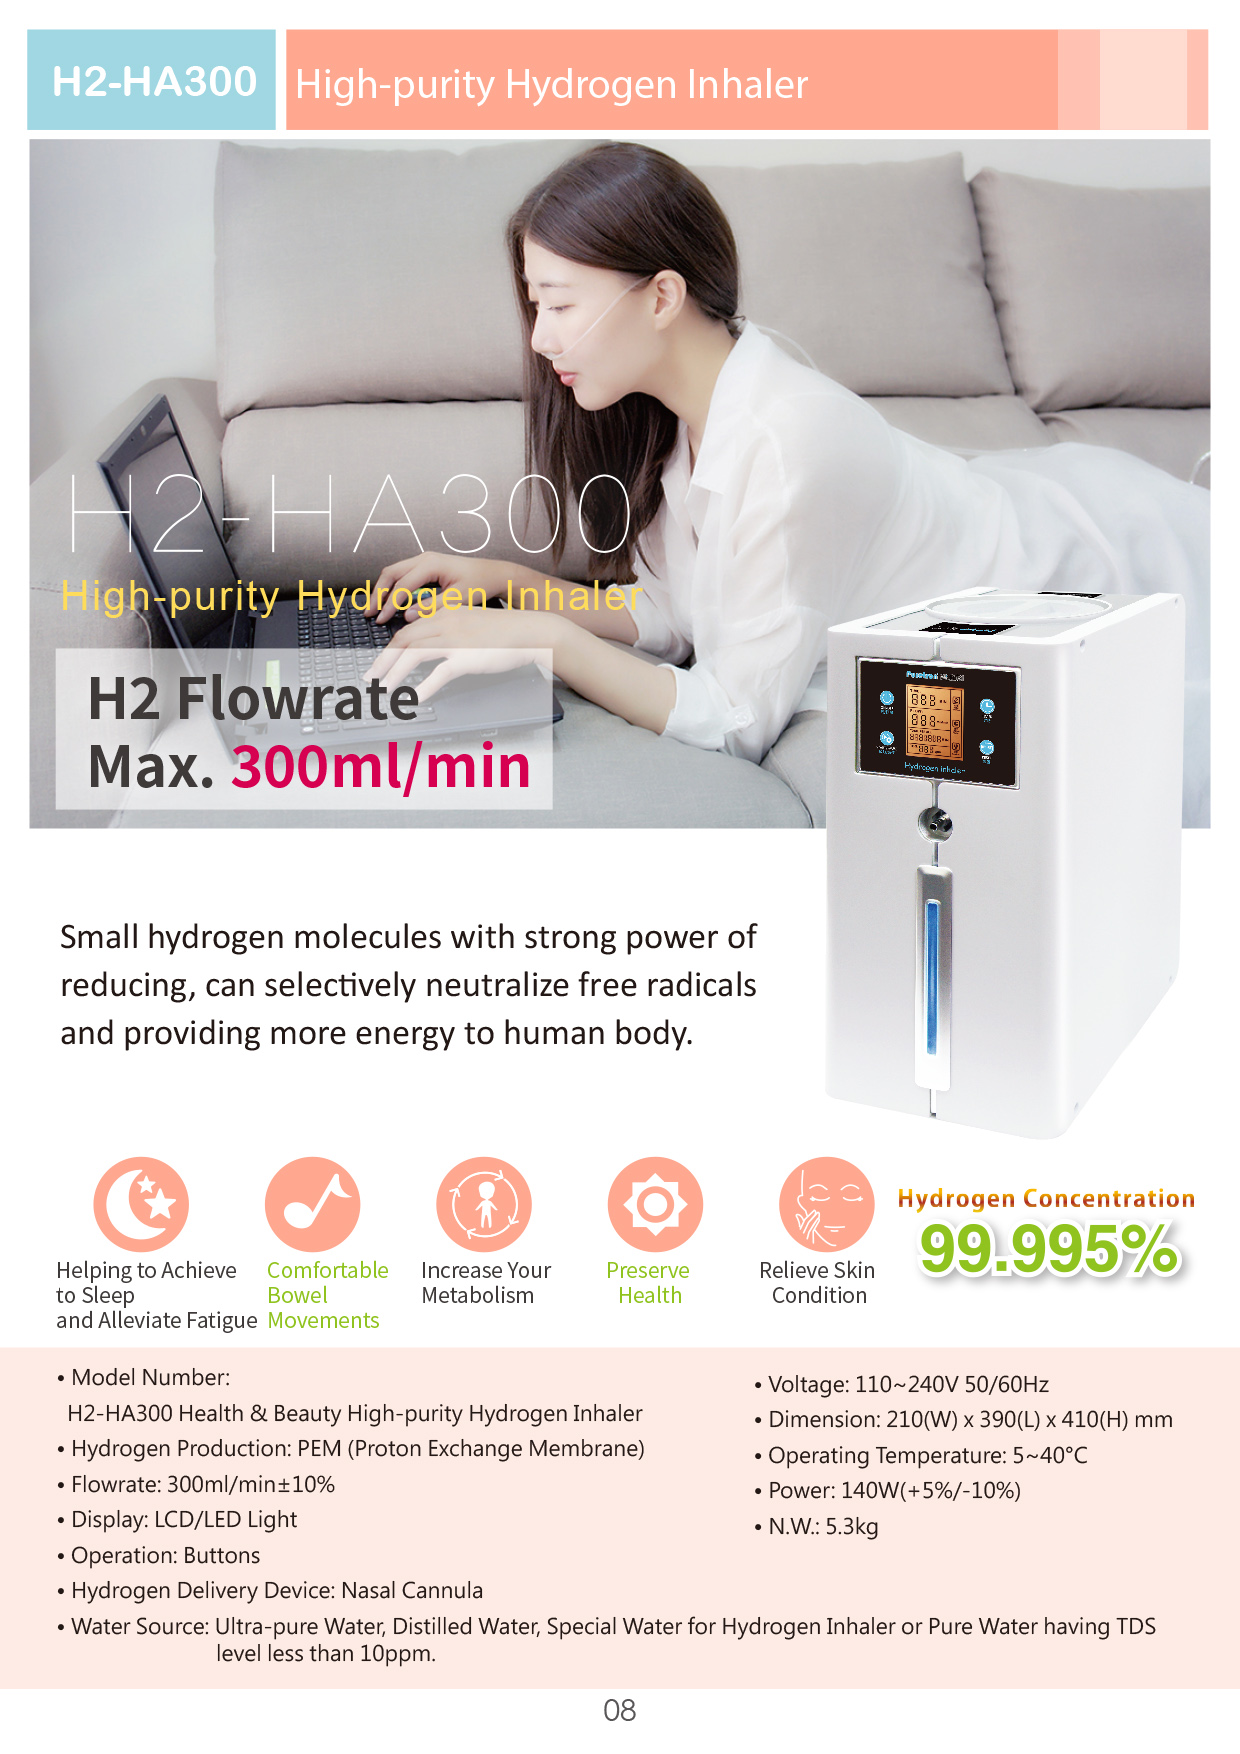 High-Purity H2 Inhaler